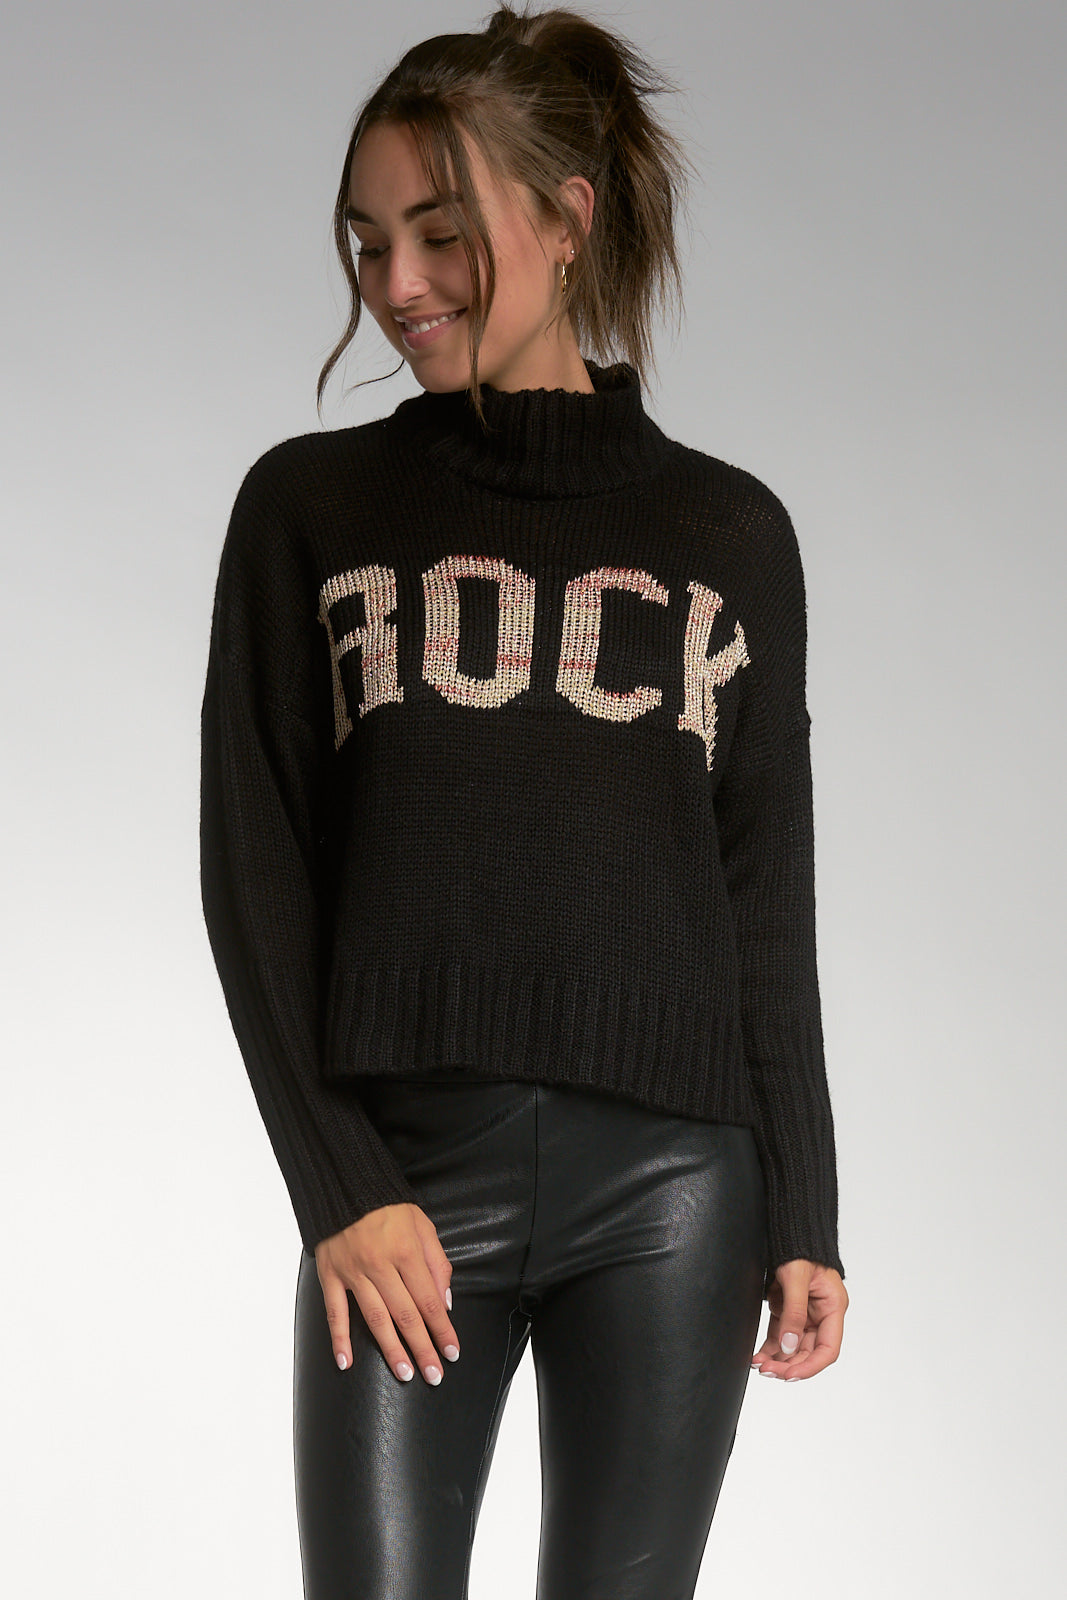 Elan Black Mock Turtleneck Rock Sweater